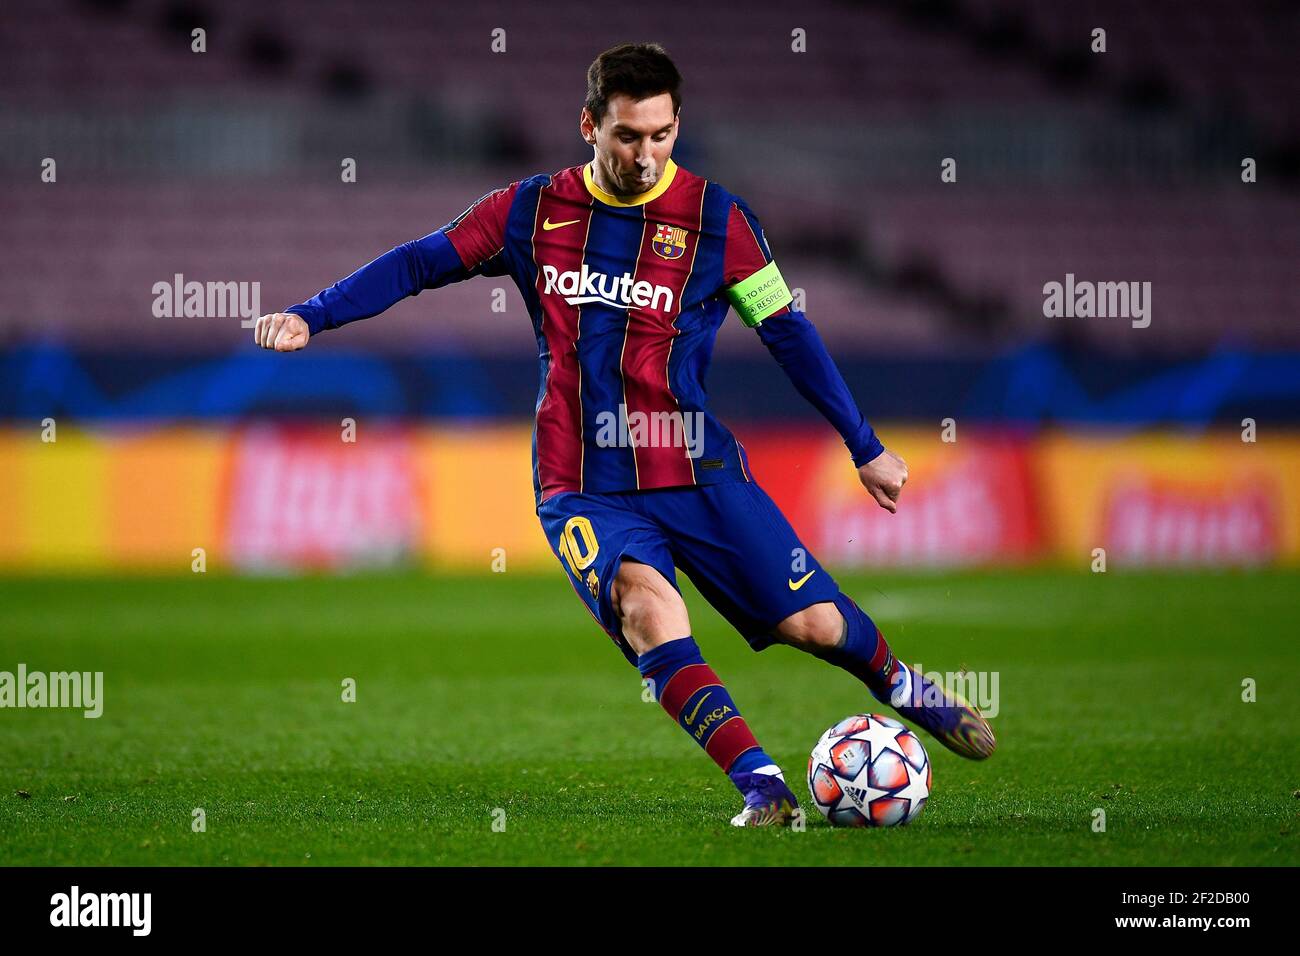 Barcelone, Espagne - 08 décembre 2020 : Lionel Messi du FC Barcelone fait  le ballon lors du match de football du groupe G de la Ligue des champions  de l'UEFA entre le